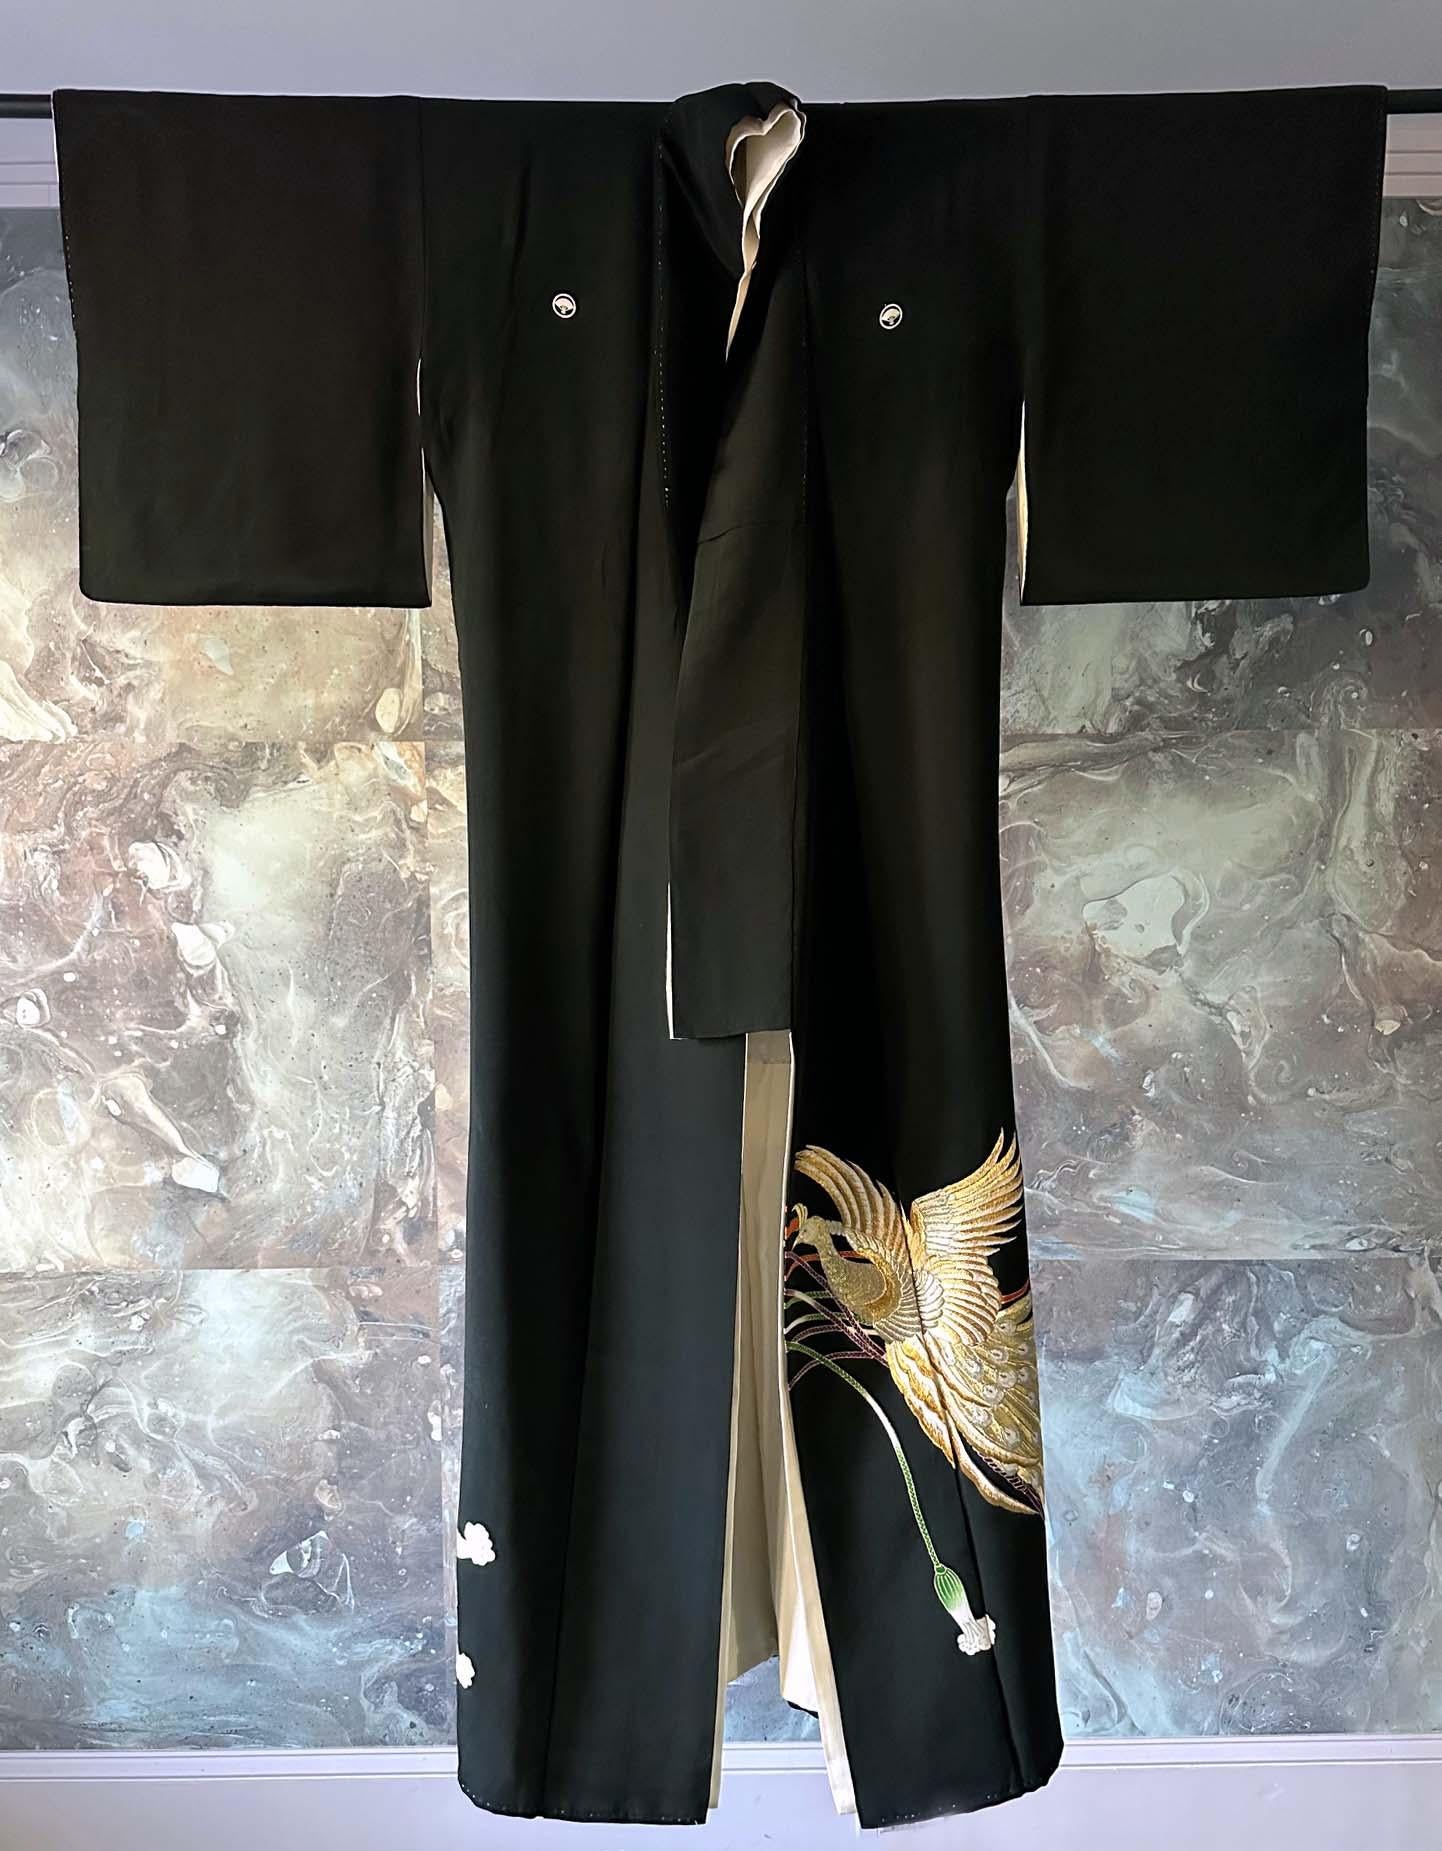 Kimono japonais vintage en soie Kuro Tomesode, circa 1950-1980. Le Kuro Tomesode est une robe destinée aux femmes mariées pour les occasions les plus formelles, l'équivalent des robes de soirée en Occident. Il est globalement noir, décoré uniquement